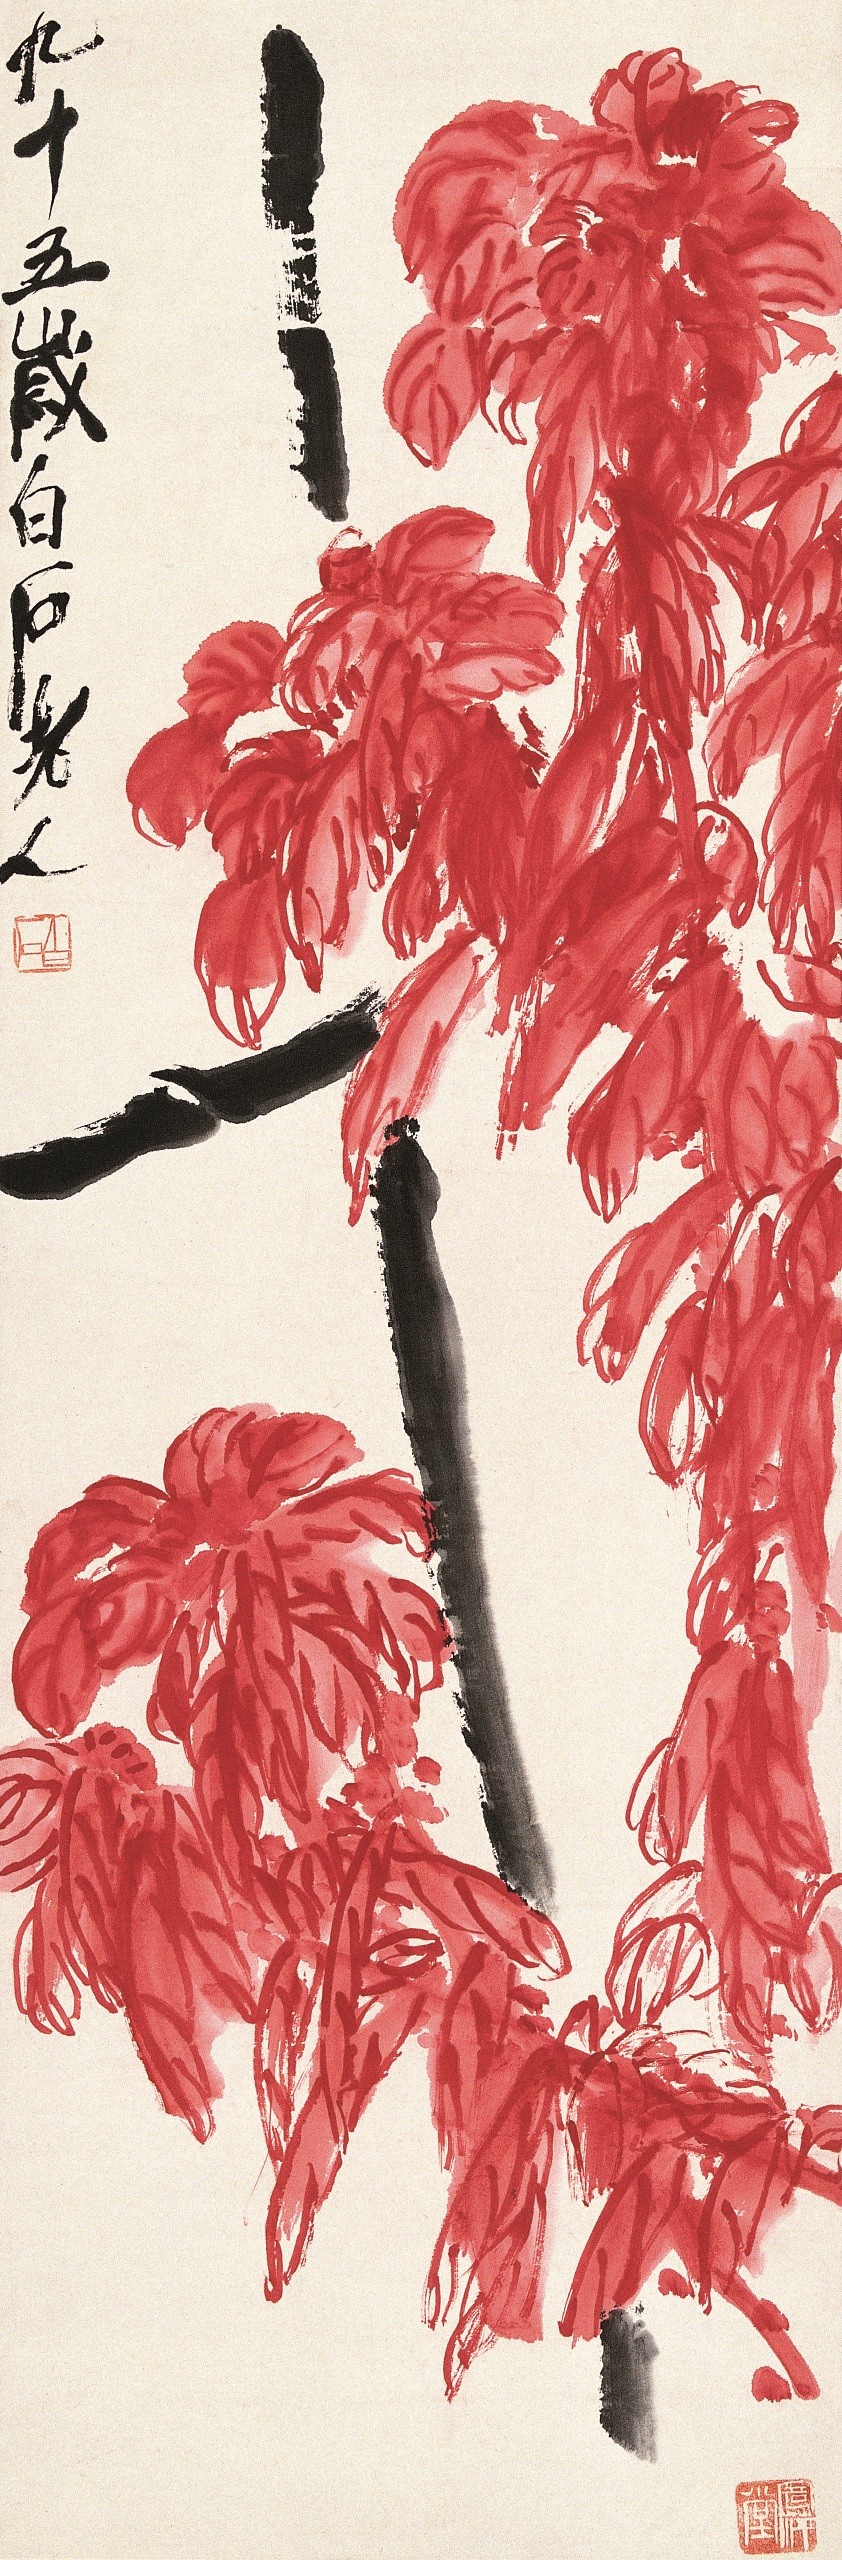 中国美術 白石墨妙 1959年2月発行 水印画集 | www.giocapprendo.com